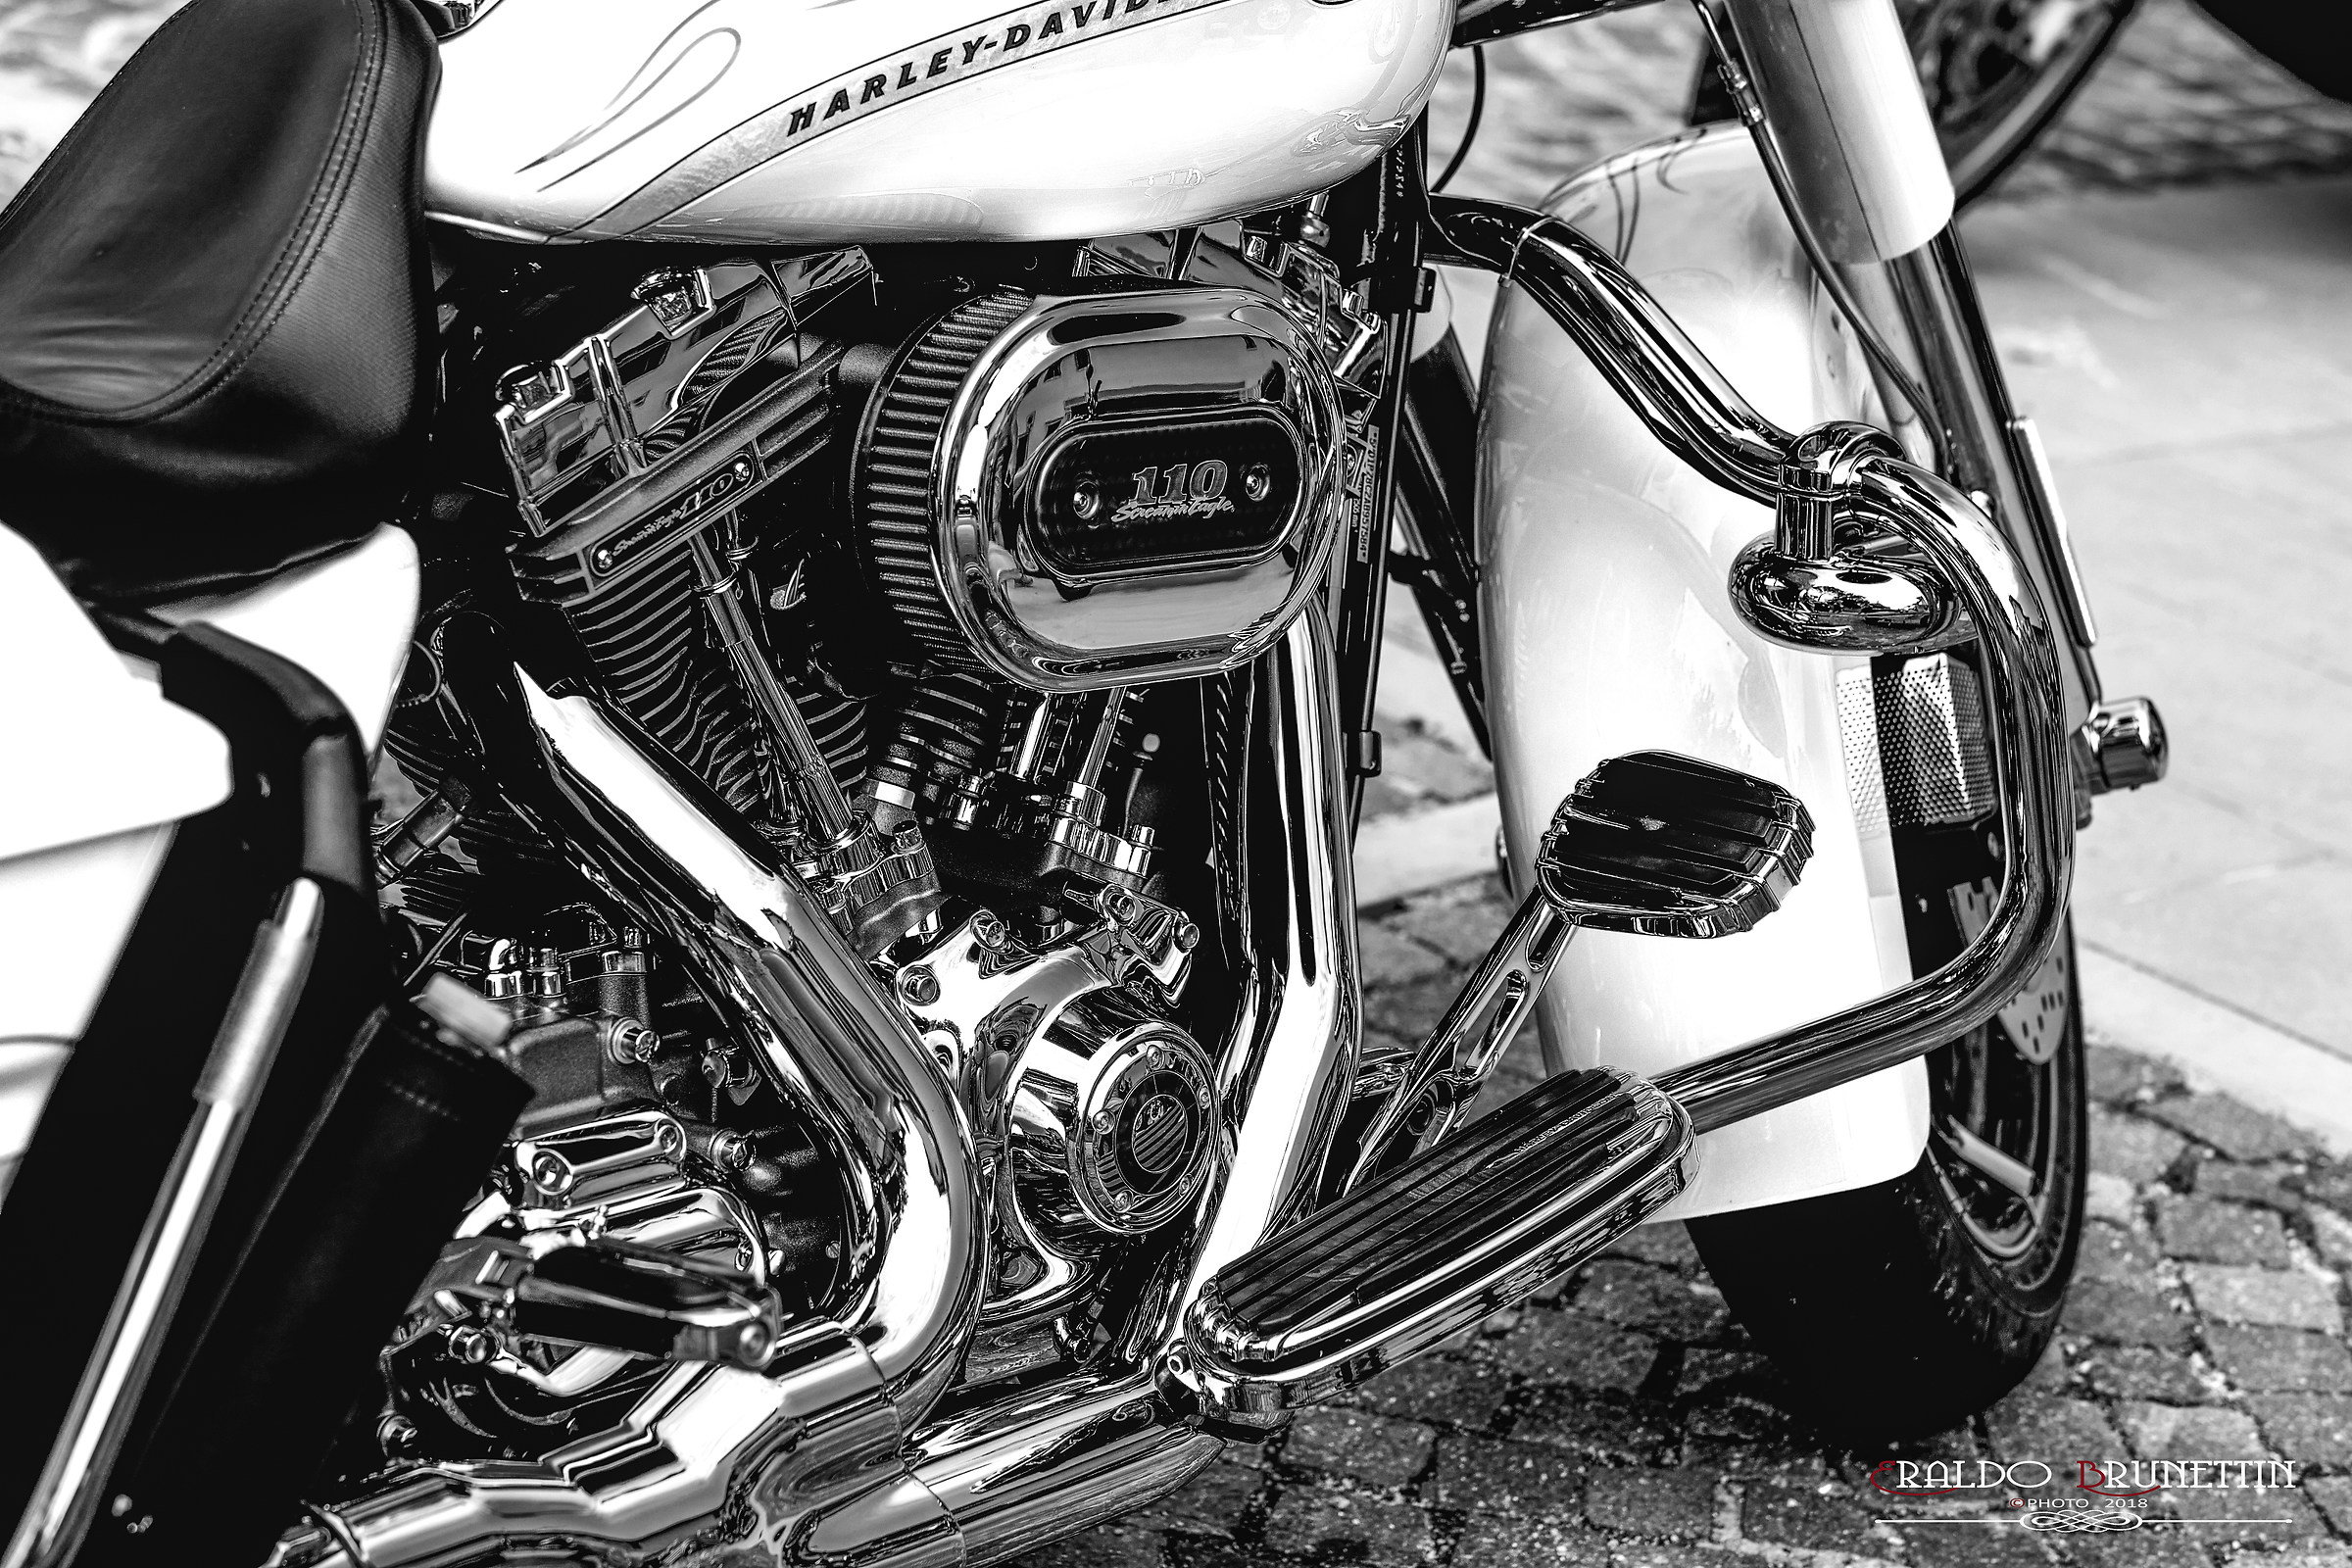 Metallic Harley Davidson....